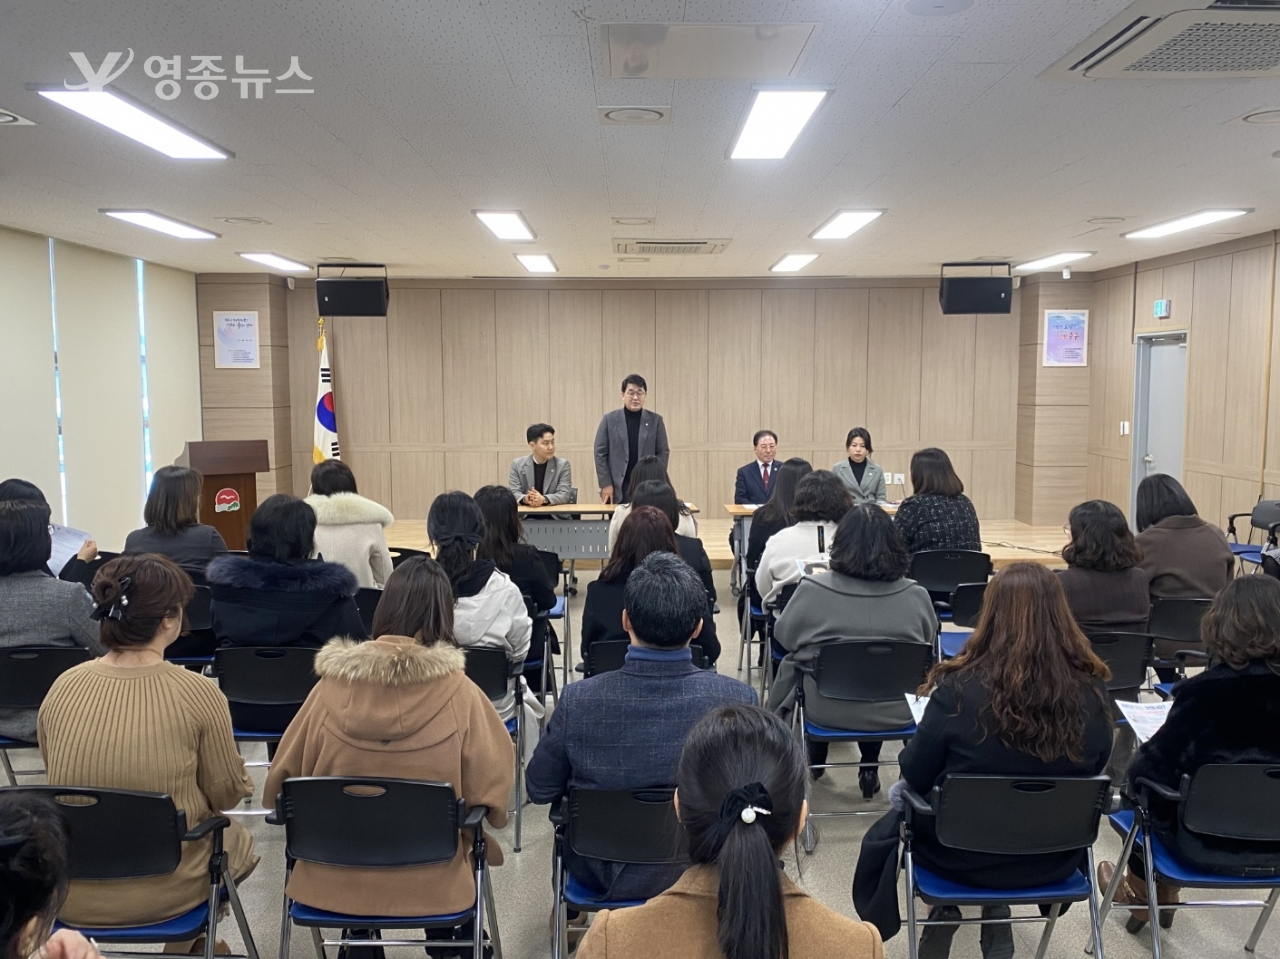 배준영 국회의원, 영종 국공립 어린이집 간담회 개최로 아동 교육 및 복지 개선 논의